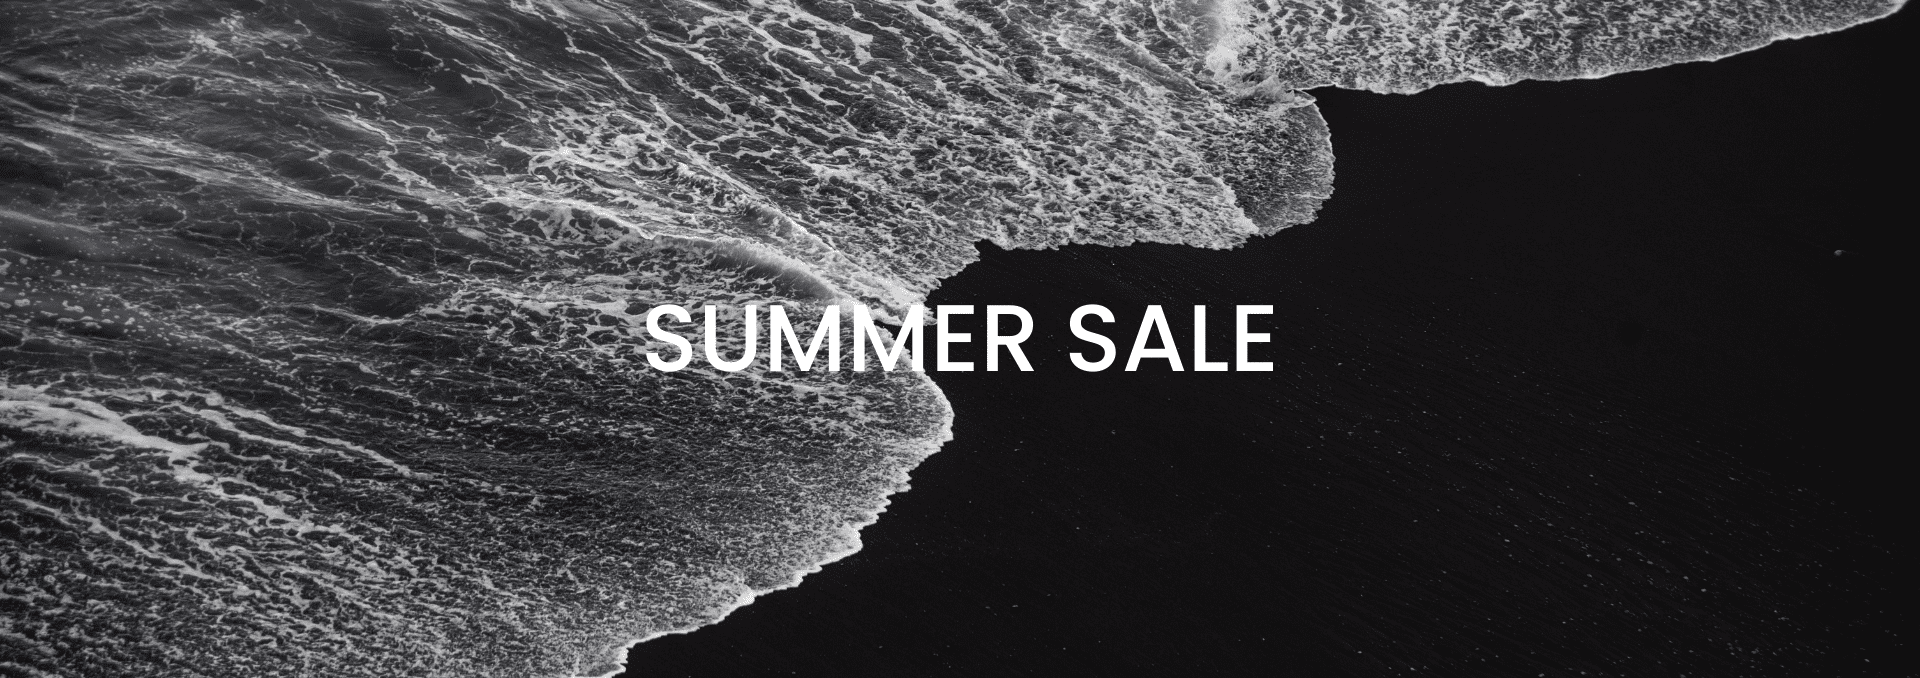 monochrome-summer-sales